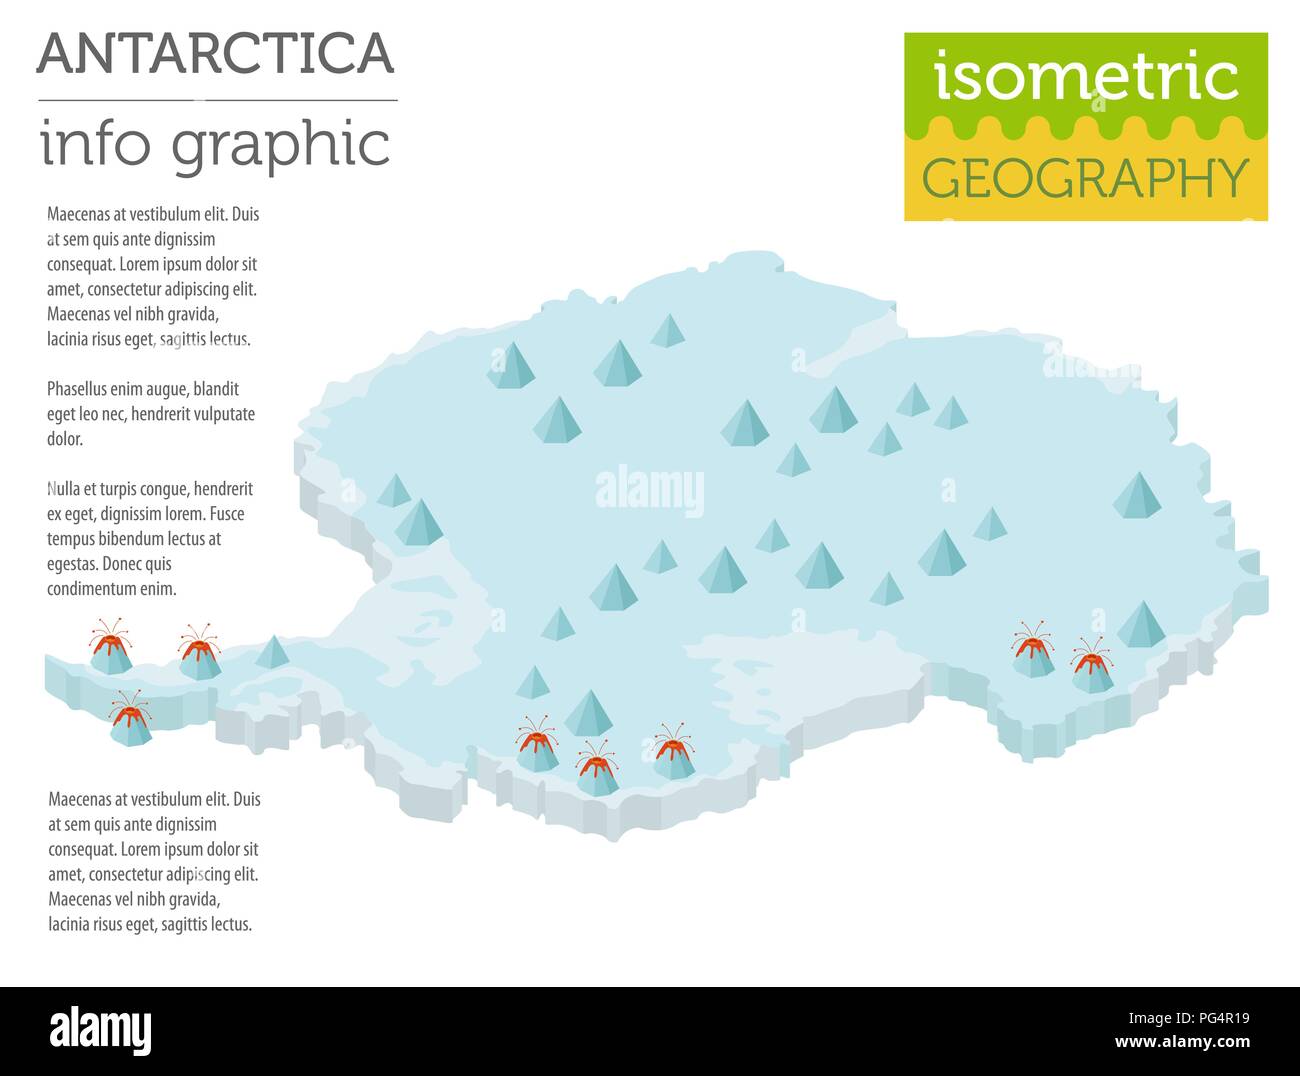 Isometrische 3d-Antarktis physische Karte Elemente. Ihre eigene Geographie info Graphische Sammlung aufzubauen. Vector Illustration Stock Vektor